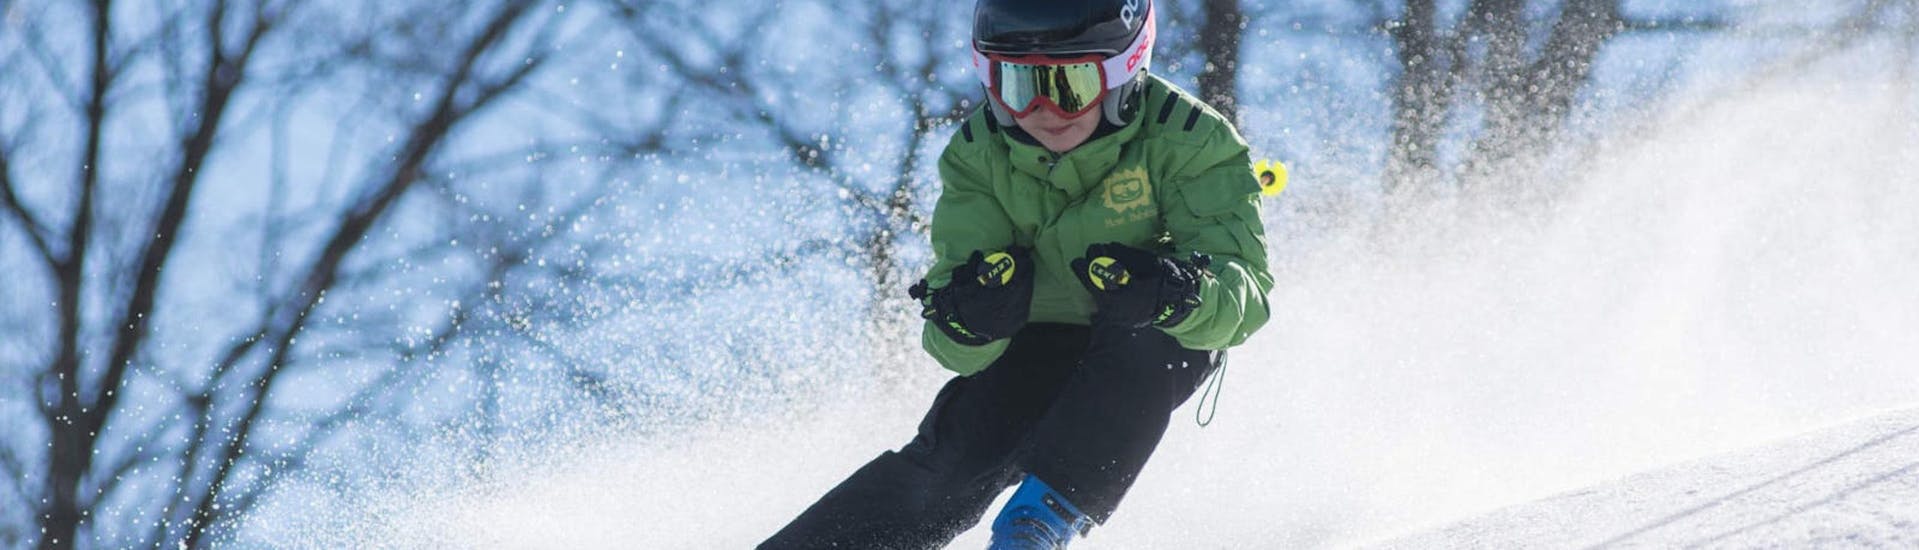 Cours de ski Enfants dès 6 ans - Avancé.